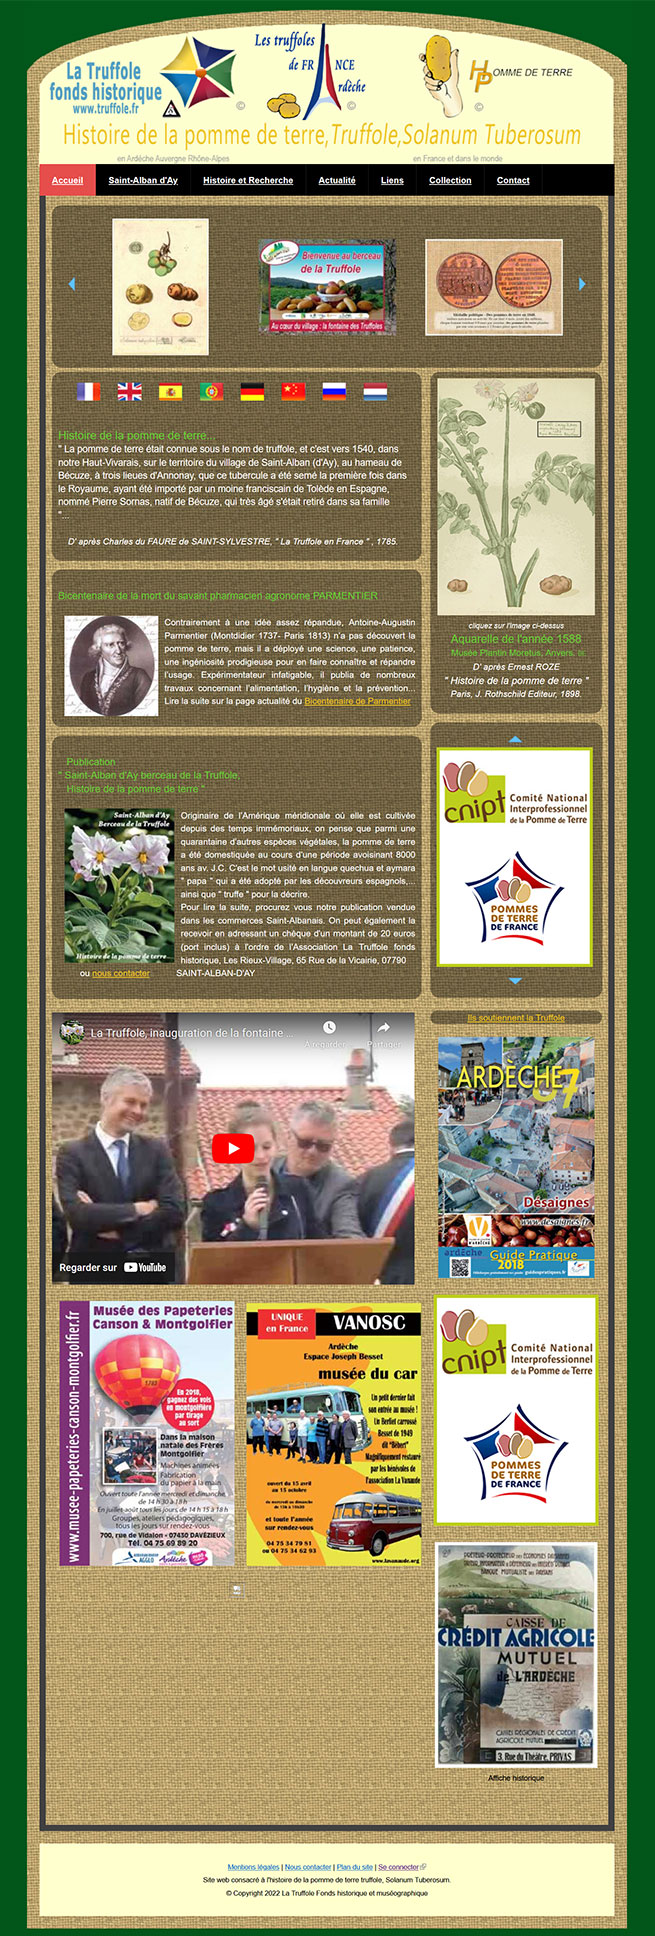 Copie d'écran de l'ancienne version du site internet de promotion de la truffole